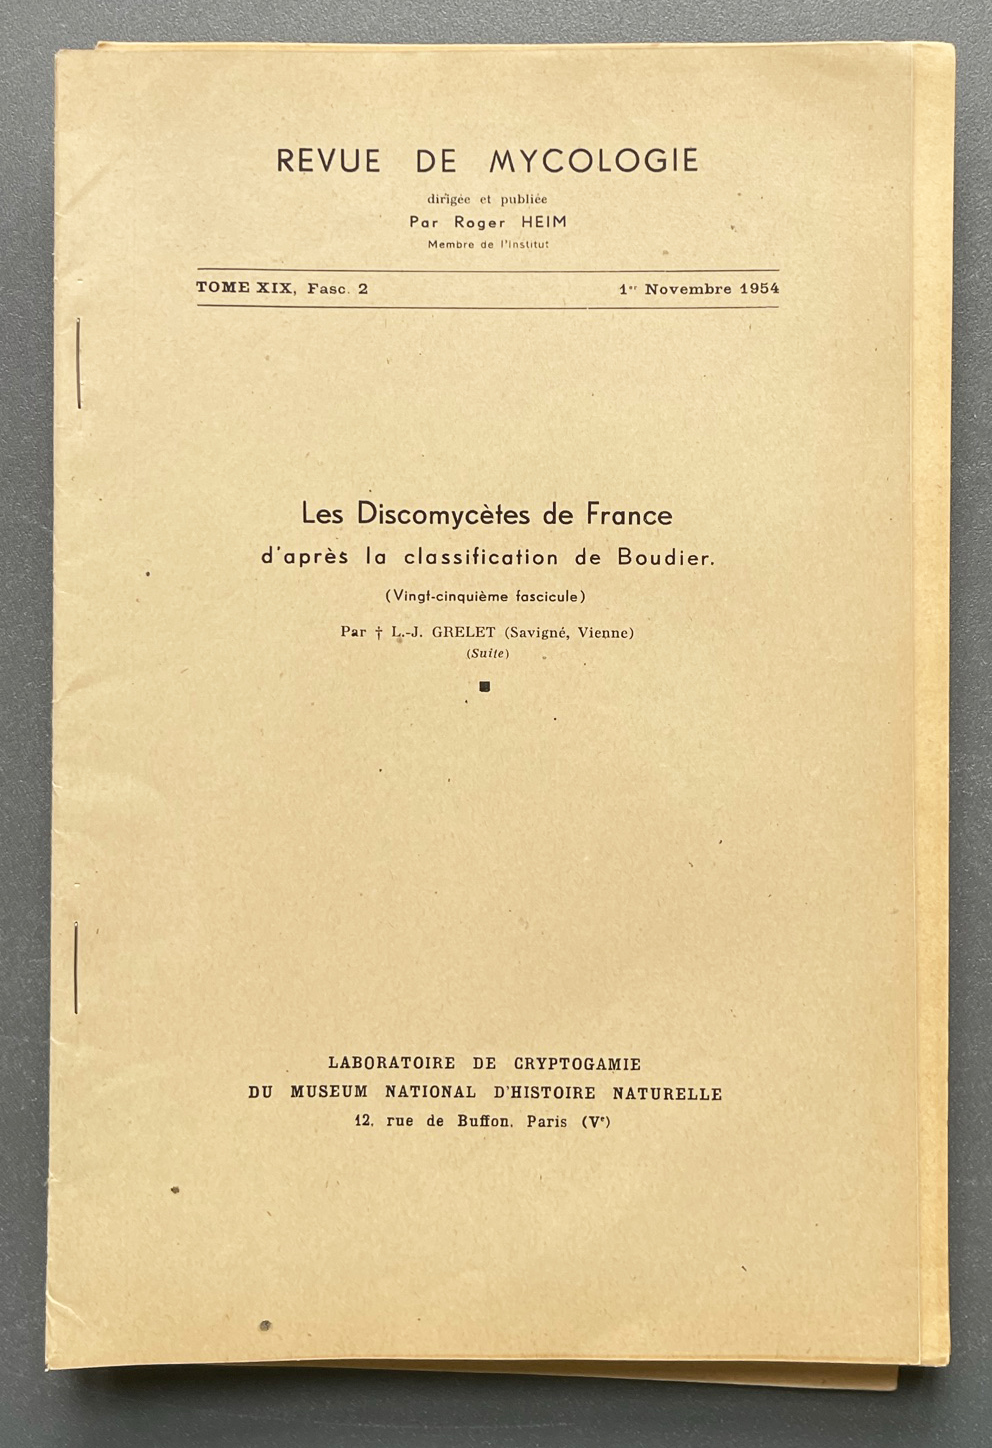 Les Discomycetes de France, 20 offprints published between 1932-1959 ...